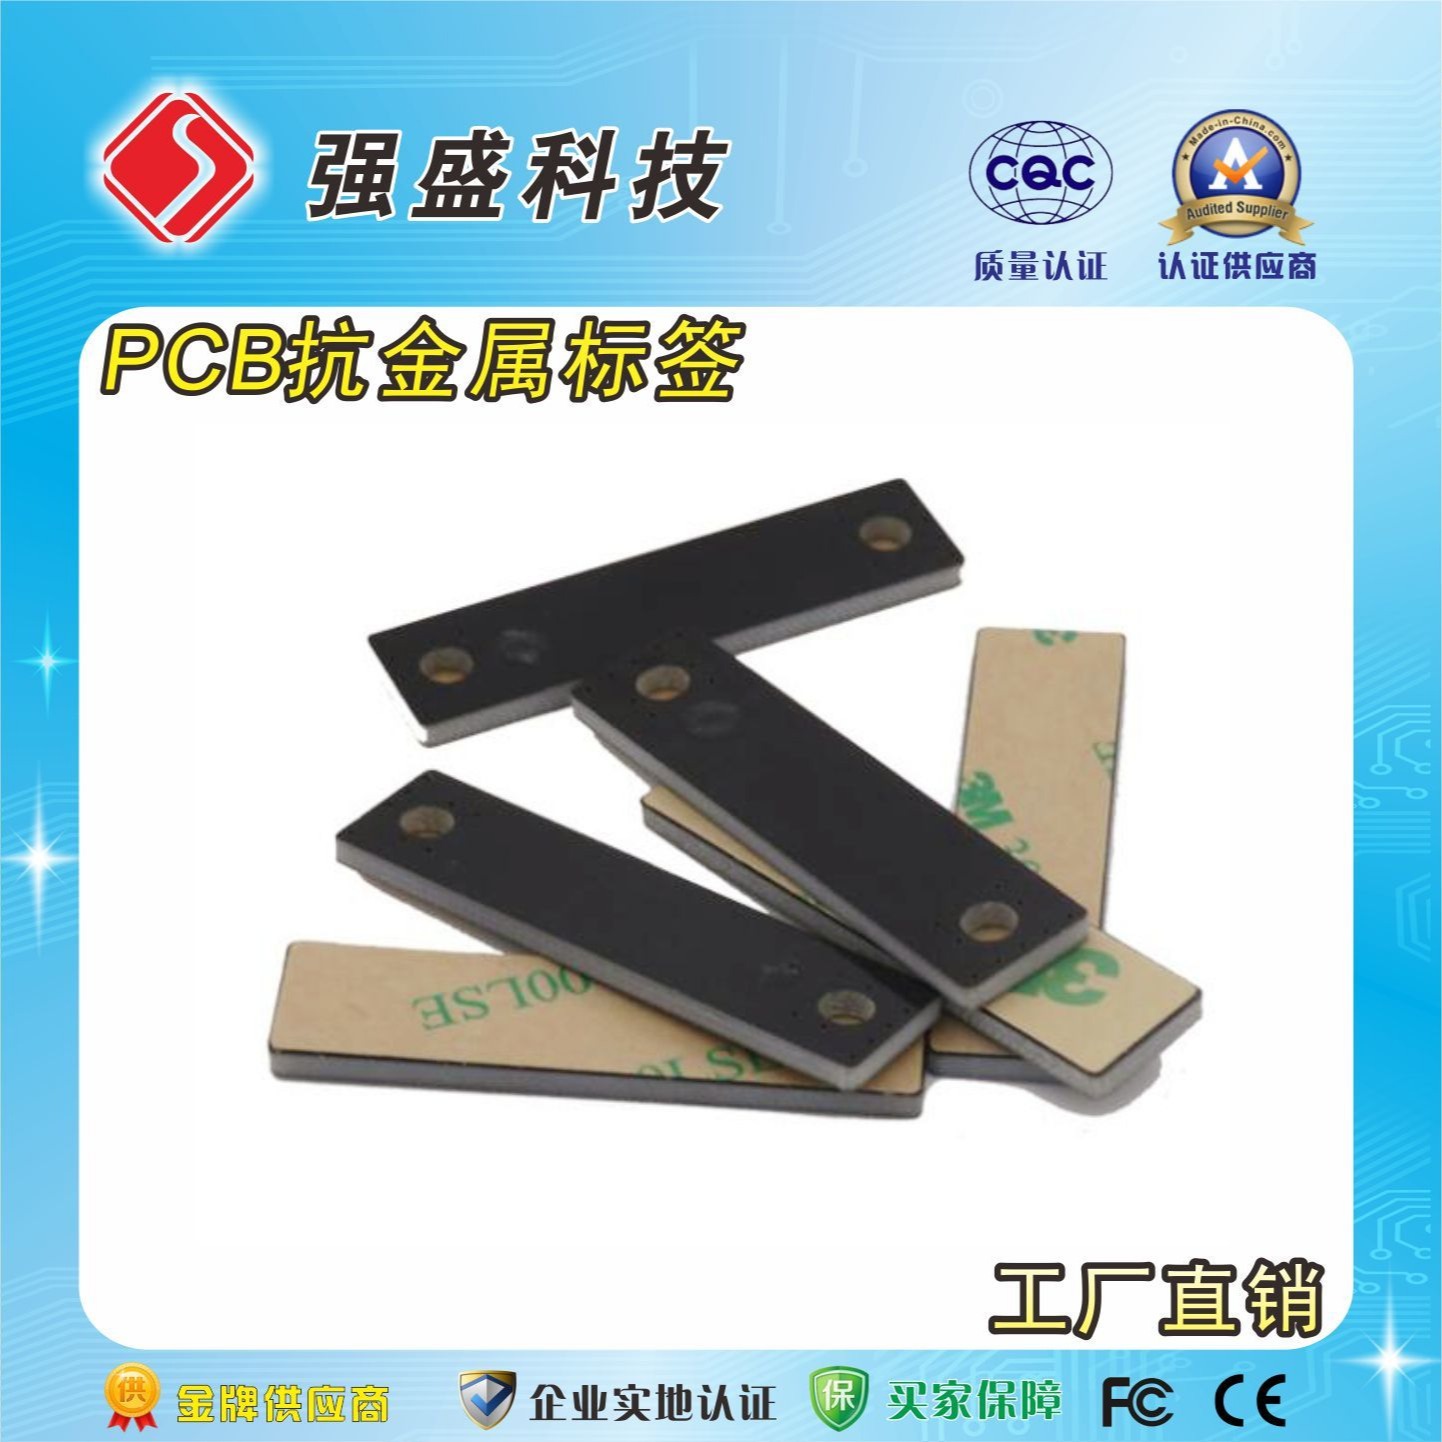 PCB超高频抗金属标签 RFID电子标签厂家 汽车部件PCB电子标签图片